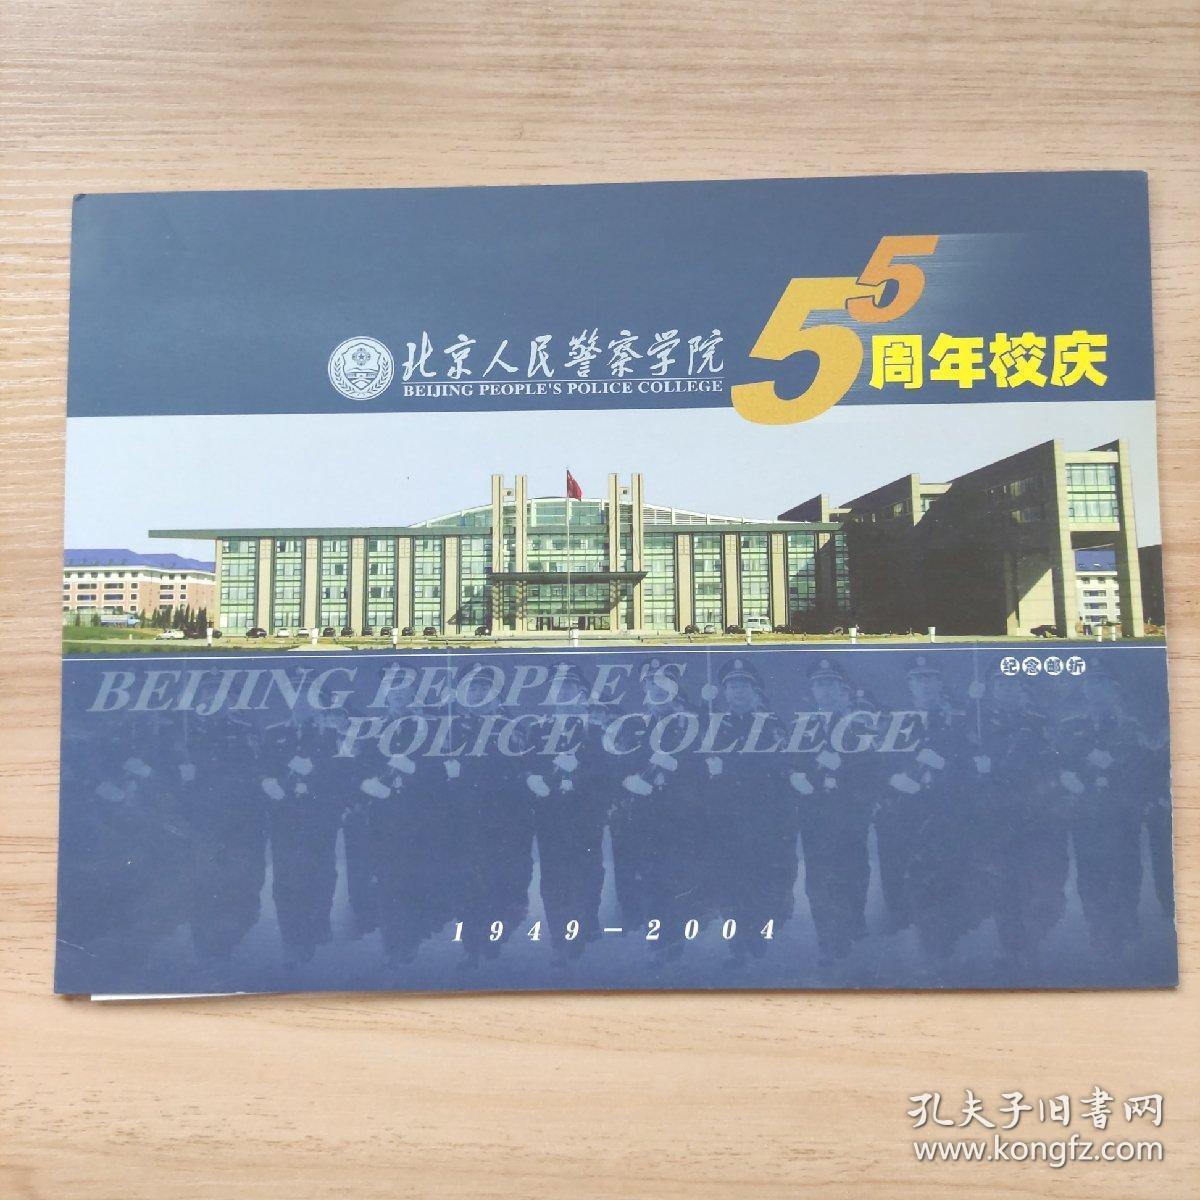 北京人民警察学院 5周年校庆 纪念邮折